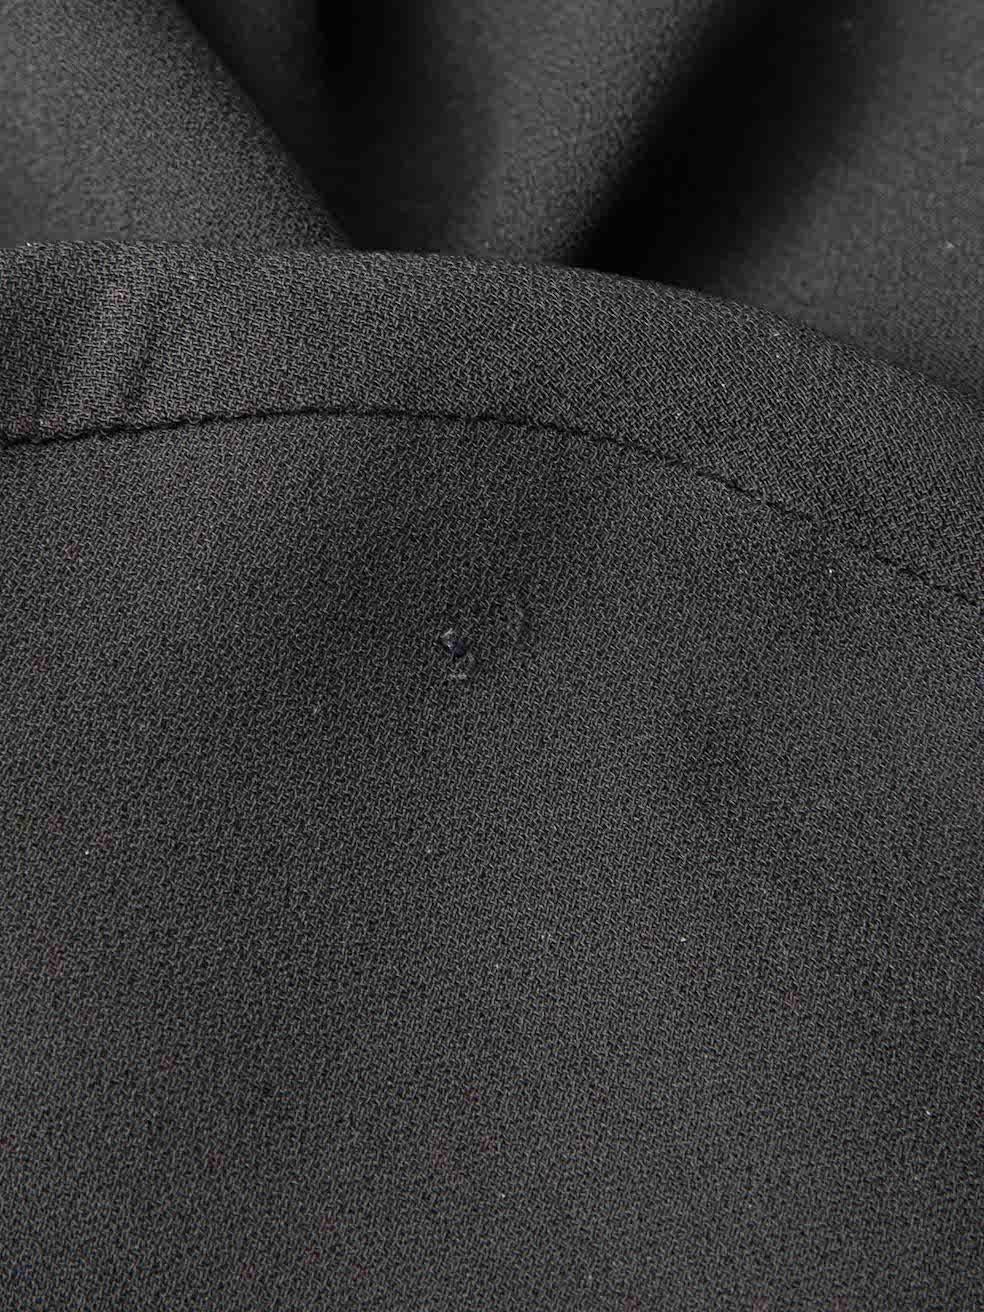 Black Asymmetric Zipped Jumpsuit Size XS For Sale 4